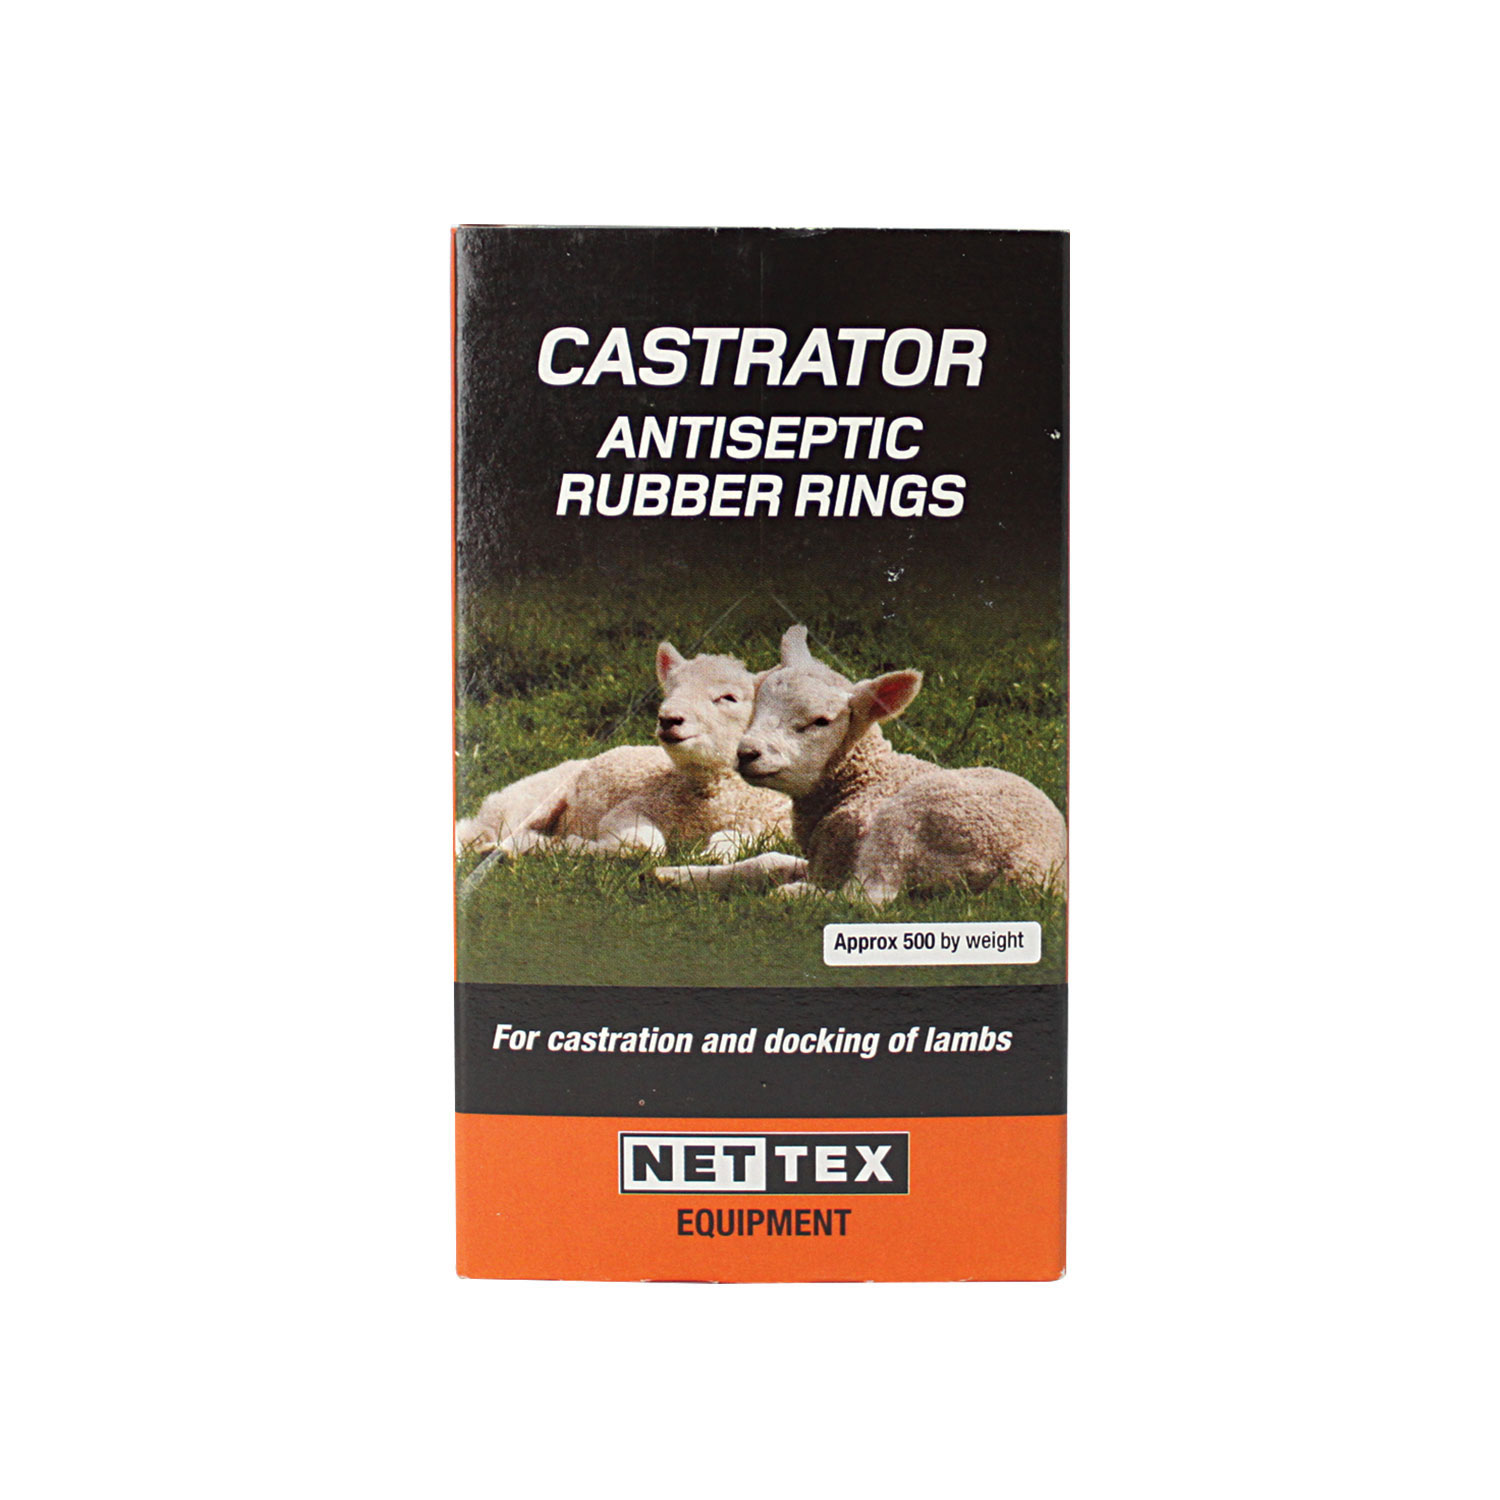 NETTEX CASTRATOR ANTISEPTIC RUBBER RINGS 500 BOX